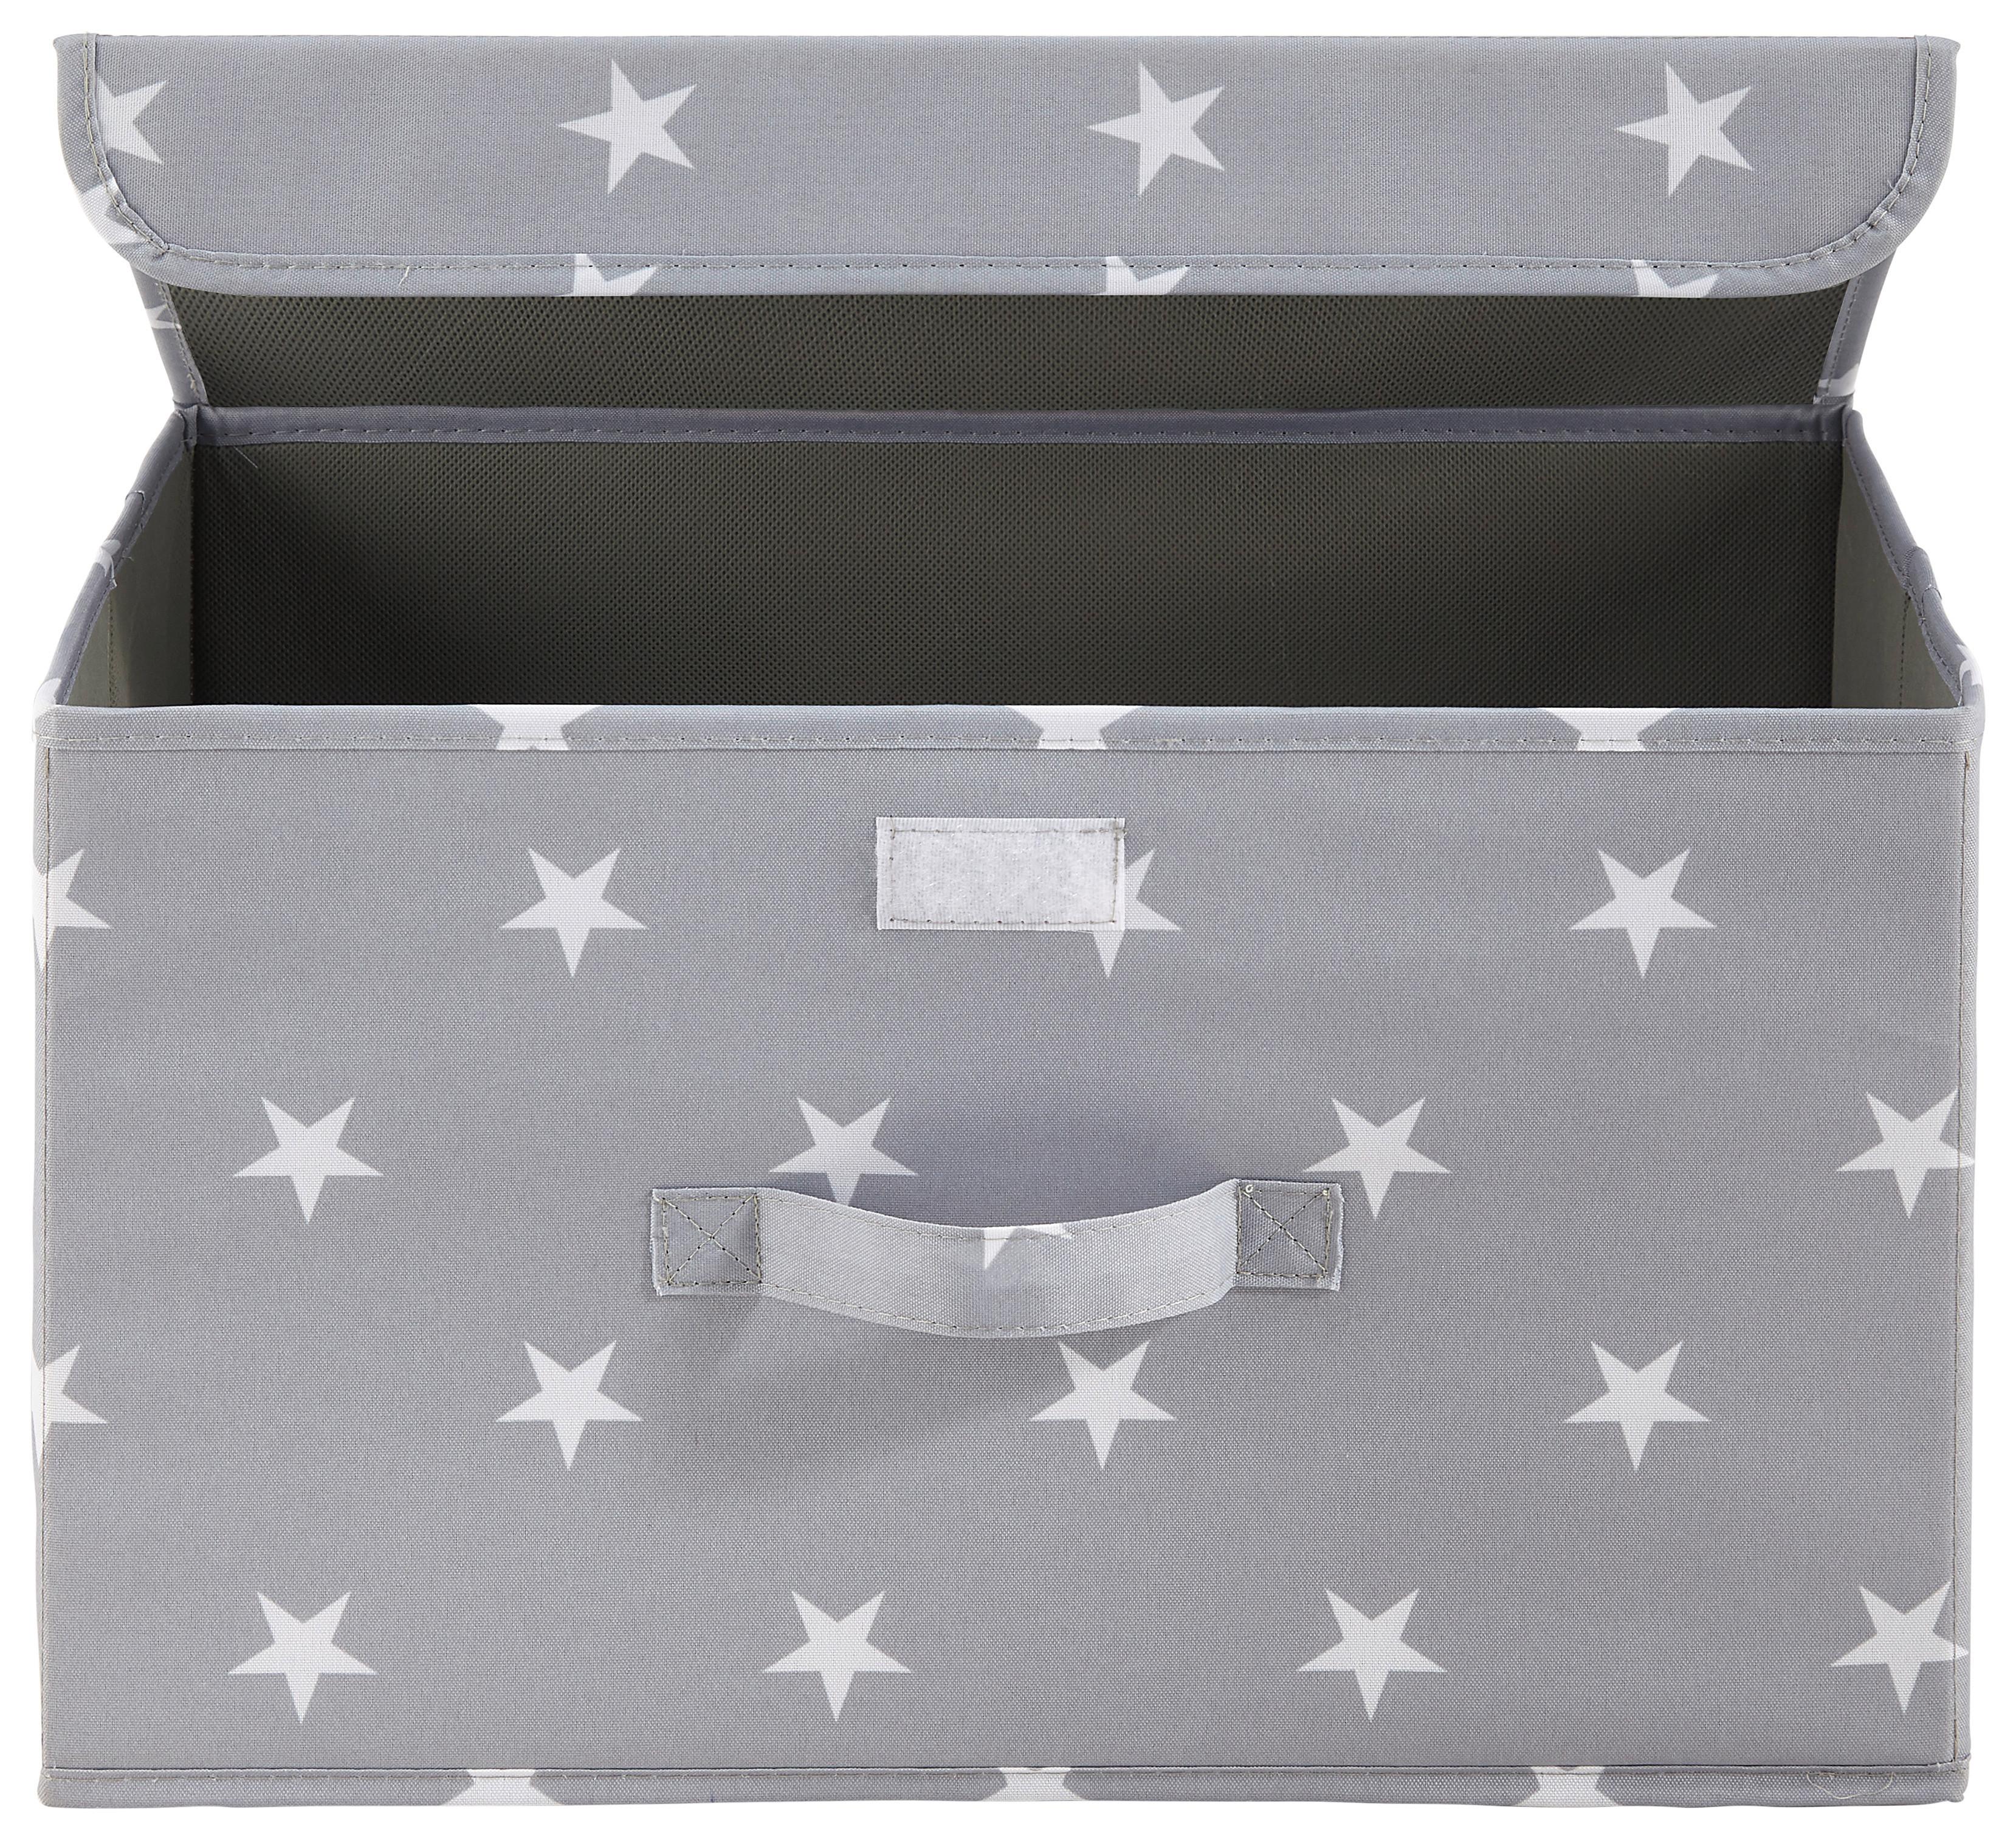 Faltbox Sandy in Grau mit Deckel ca. 40x25x25 cm - Weiß/Grau, MODERN, Kunststoff (40/25/25cm) - Bessagi Home